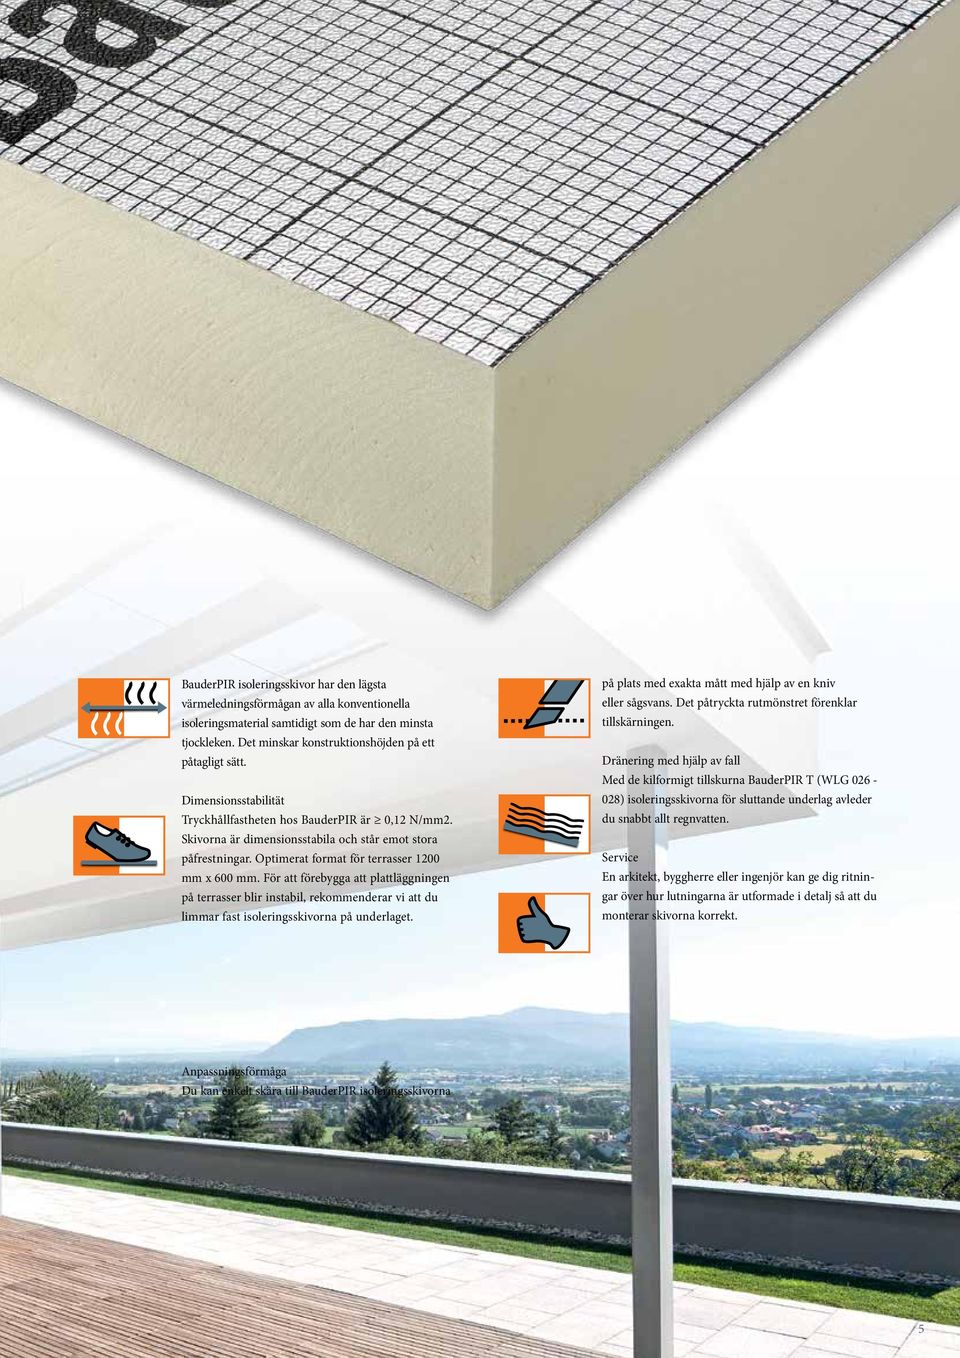 Optimerat format för terrasser 1200 mm x 600 mm. För att förebygga att plattläggningen på terrasser blir instabil, rekommenderar vi att du limmar fast isoleringsskivorna på underlaget.